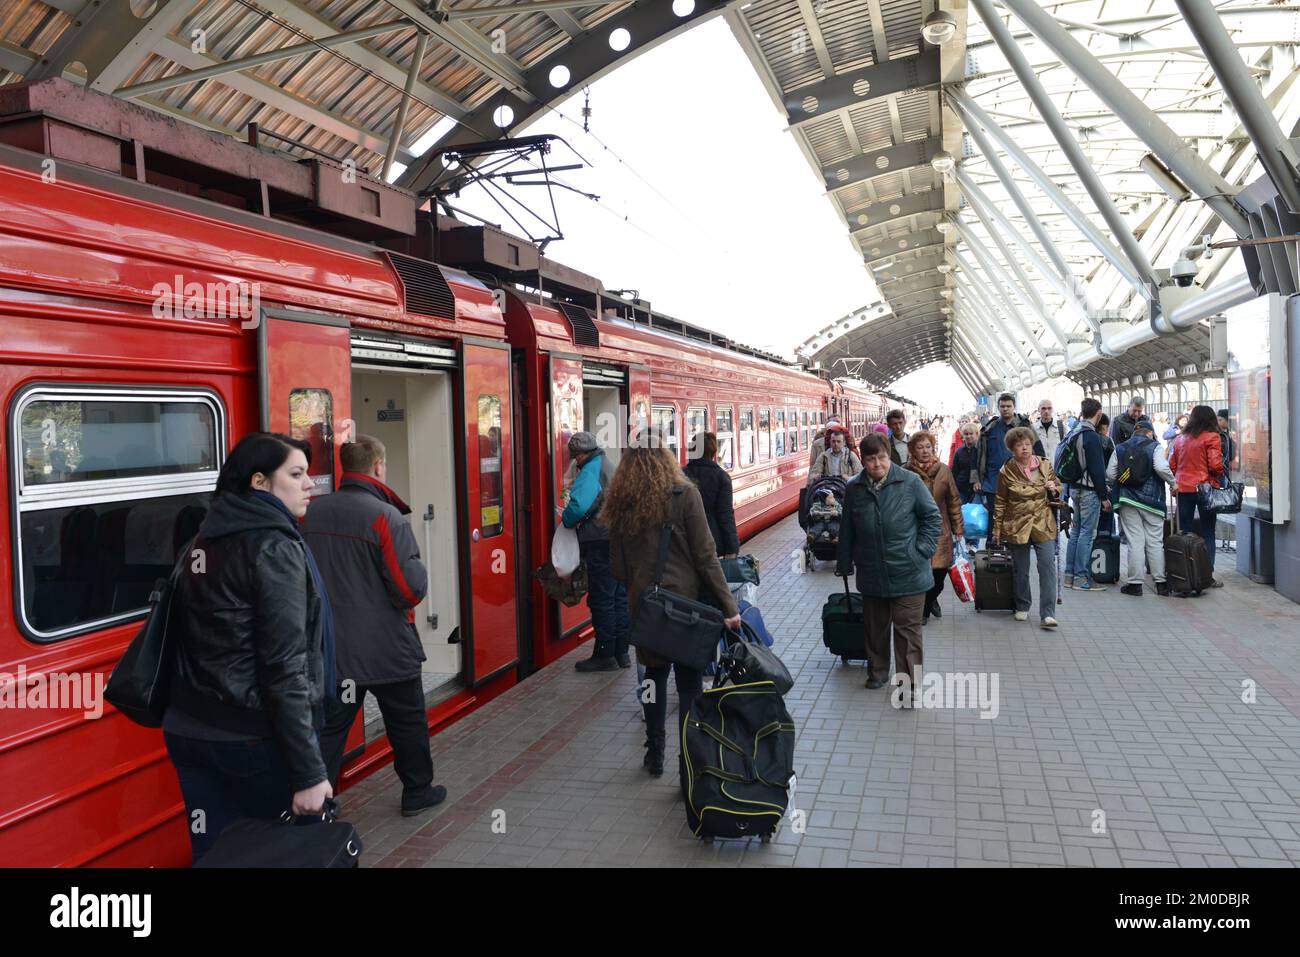 MOSCOU - 30 MARS : train rouge Aeroexpress sur l'aéroport Domodedovo de 30 mars 2014 à Moscou. Aeroexpress Ltd. Est l'exploitant du service de liaison ferroviaire Banque D'Images